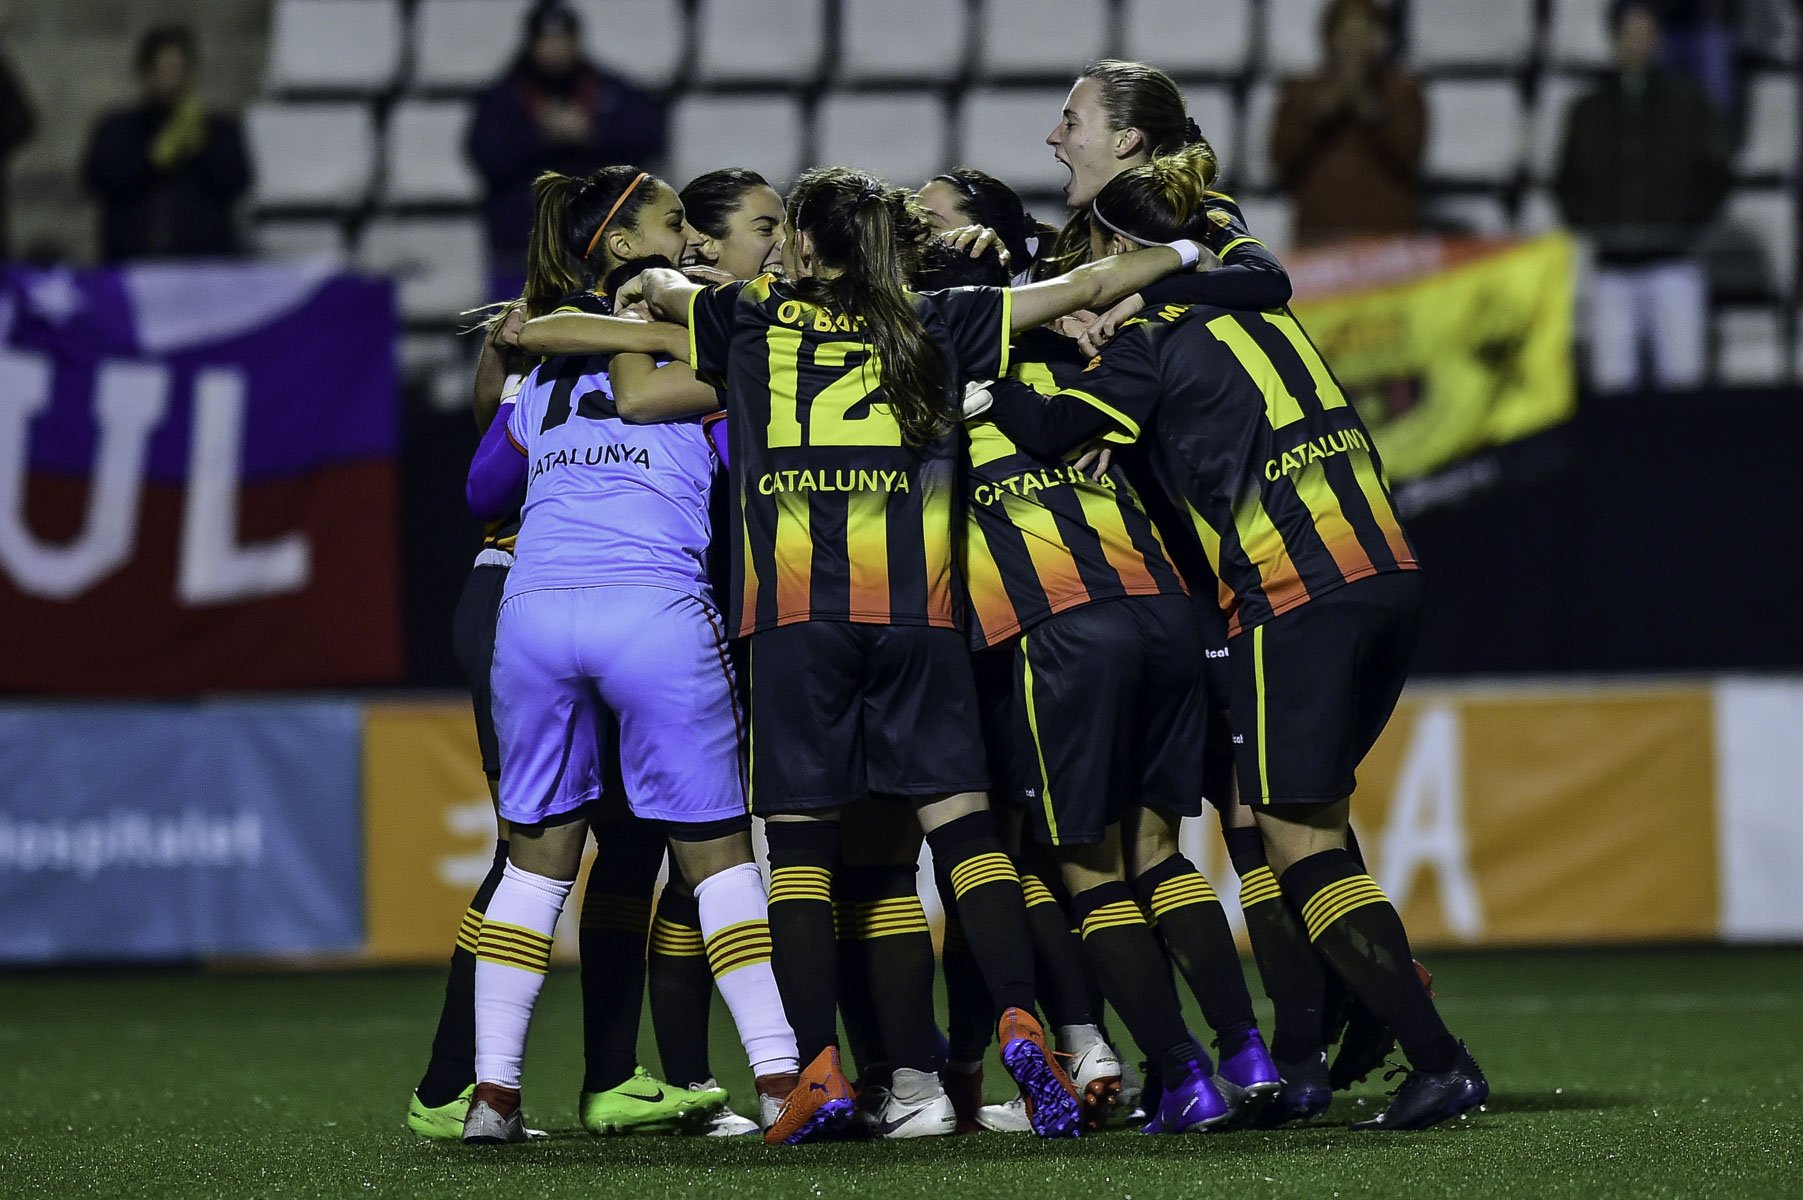 La selección catalana femenina de fútbol vuelve tres años después con dos partidos